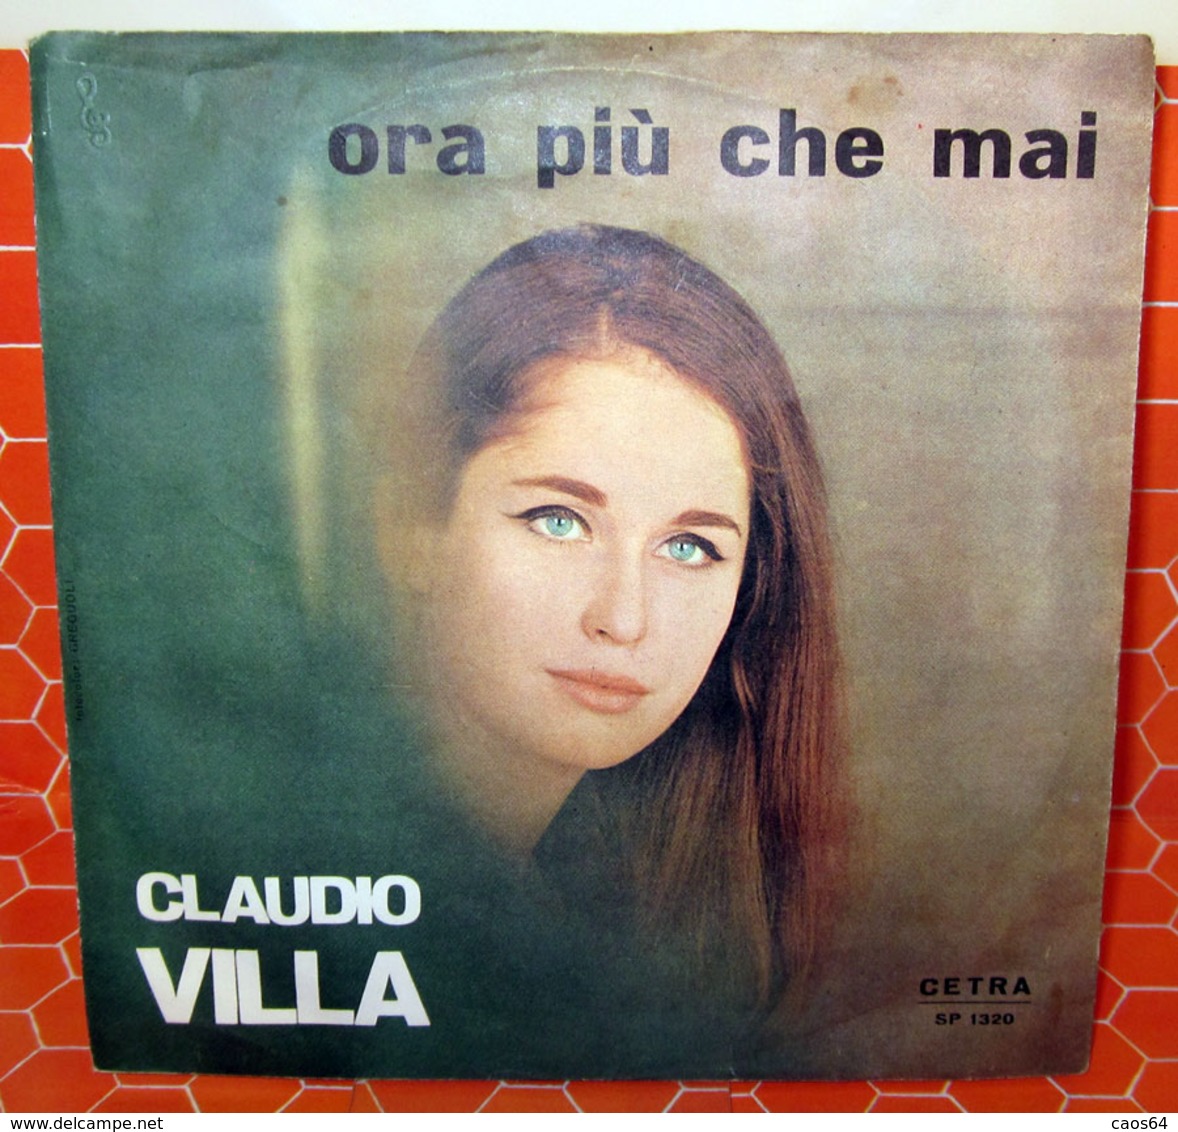 CLAUDIO VILLA GRANADA - ORA PIU' CHE MAI  7" - Altri - Musica Italiana